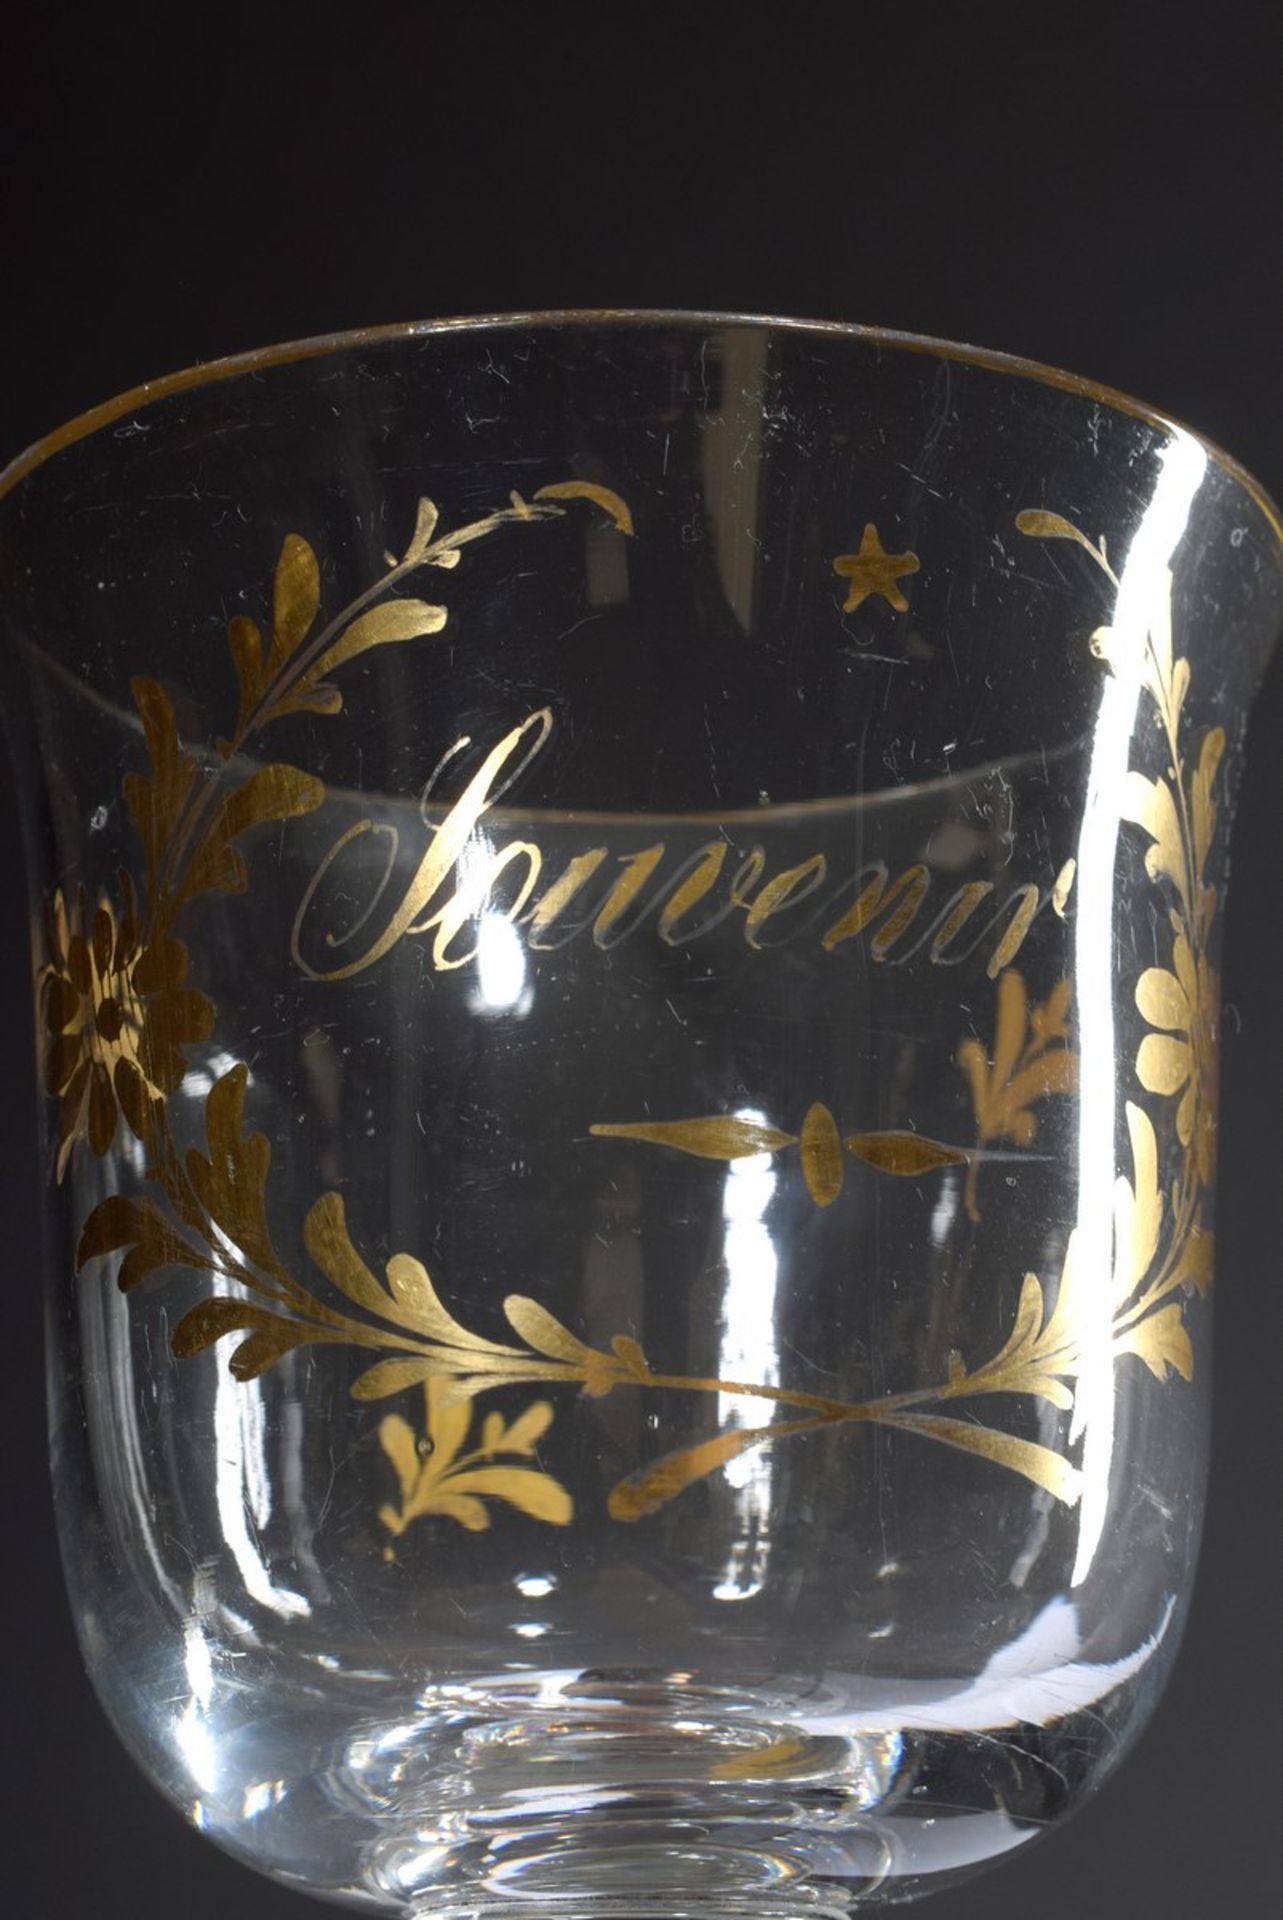 2 Teile antikes Glas: kleines facettiertes Weinglas und Kelch mit goldener Inschrift "Souvenir", - Bild 2 aus 3